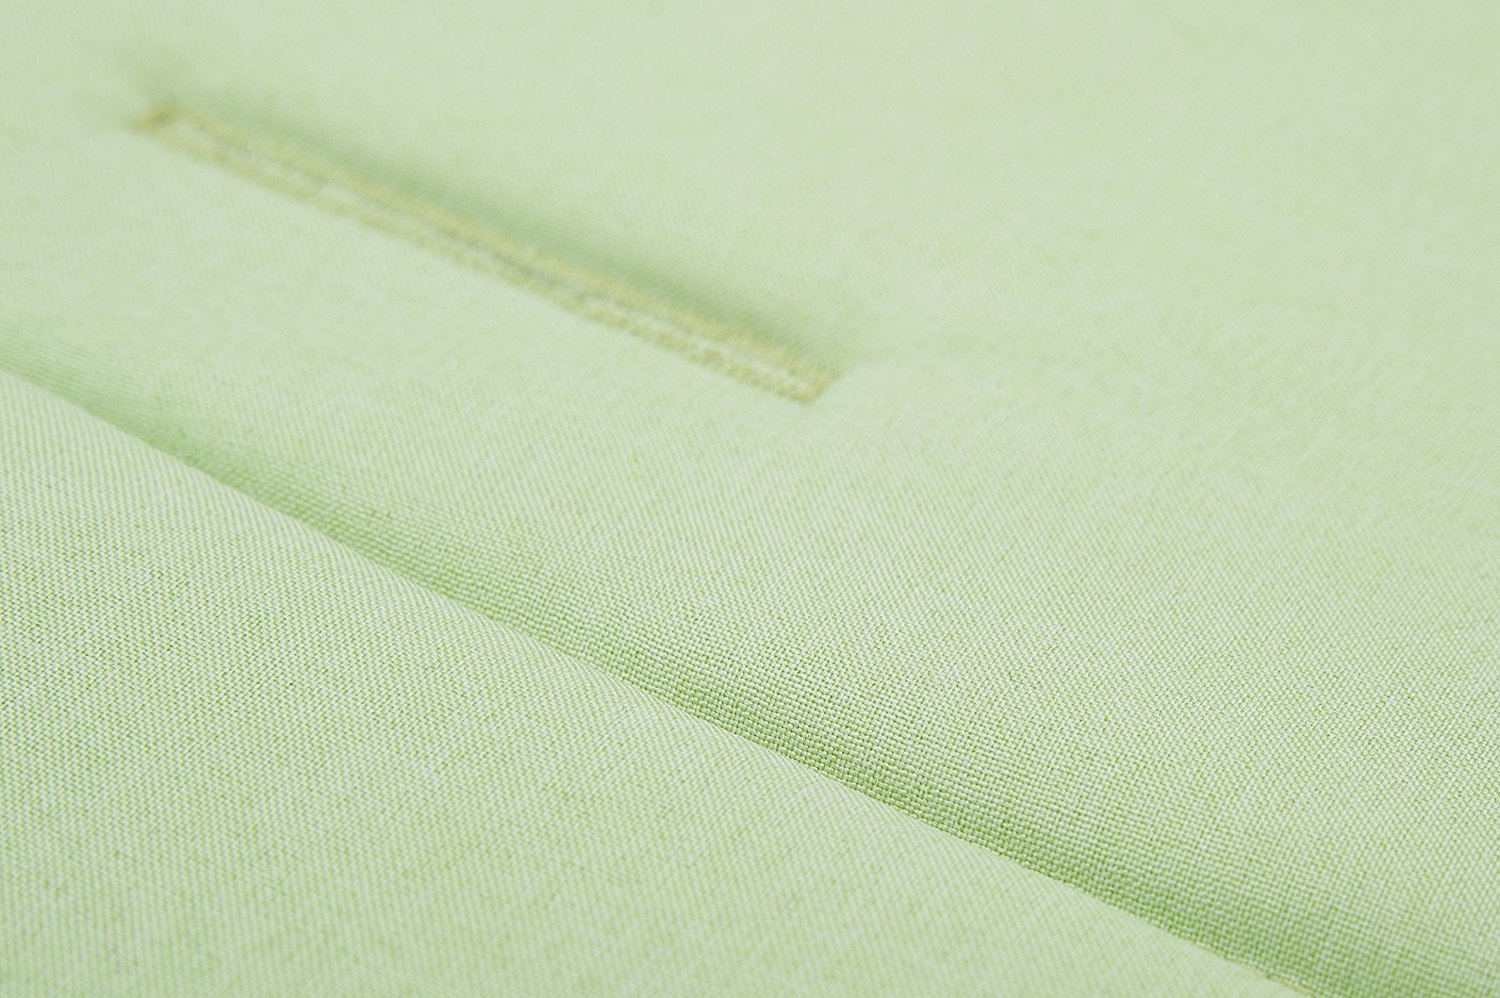 Матрасик вкладыш из ткани Lifeline Polyester с покрытием 3D Mesh, размер 83 x 42 см., цвет светло-зеленый  